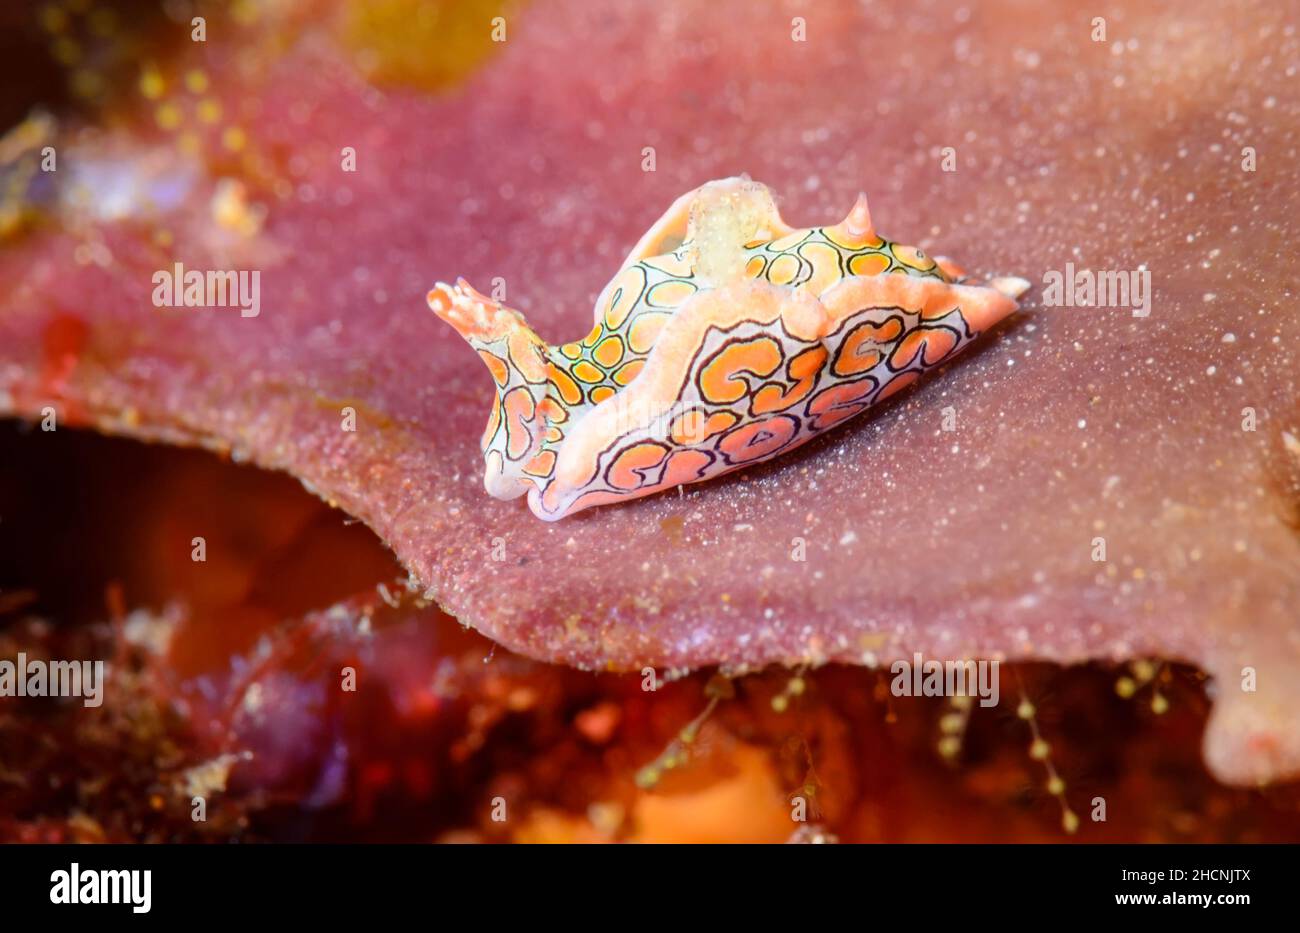 Headshield sea slug, Sagaminopteron psychedelicum, Alor, Nusa Tenggara, Indonesia, Pacific Stock Photo